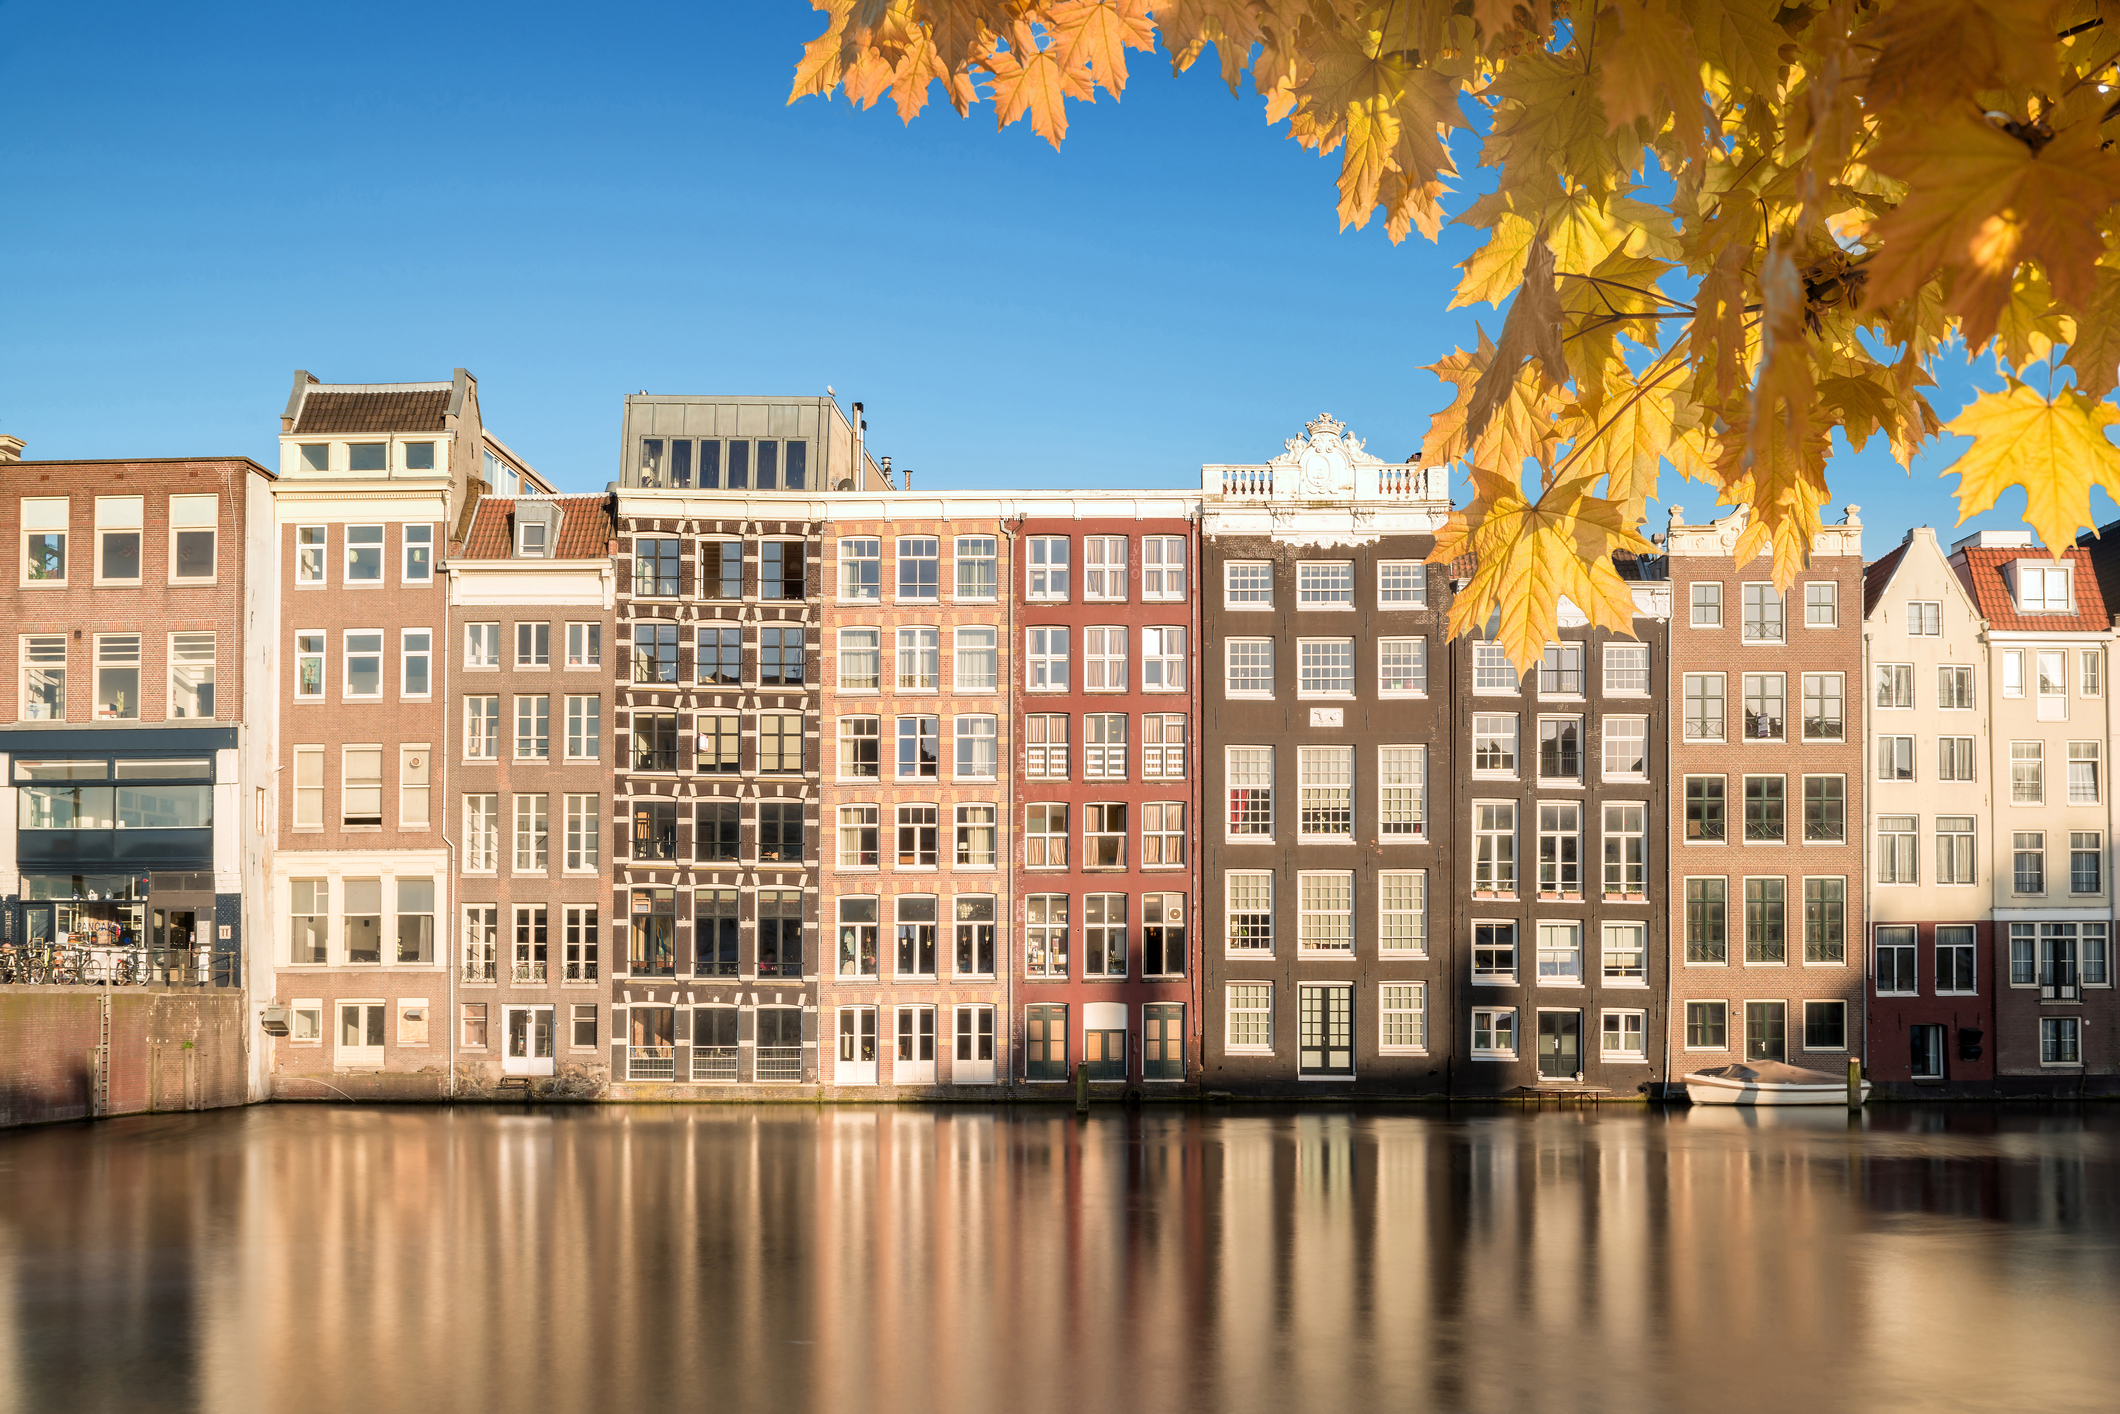 Амстердам, чист, спокоен, подреден. Пълен с цветя, колела.На всеки би му се приискало да посети този град.<br />
Големият художник Рембранд твори тук, а Ане Франк, малката писателка, е родена. Градът е столица на Кралство Нидерландия (Холандия). Името на Амстердам идва от Амстелердам. В превод означава "бент на Амстел", реката, преминаваща през града. Възникнал като рибарско селце в края на XII век, в резултат на развитието на търговията. Амстердам се превръща в един от най-големите пристанищни градове в света.През XIX и XX в. Амстердам се разраства и се образуват множество нови квартали и предградия. Кварталът на Червените фенери съществува на днешното си място от самото му основаване през XIV в., когато вместо кафенета, тук са се разполагали дестилационни фабрики, обслужвани предимно от моряци и търговци от различни националности.Нуждаещите се от освежаване и компания и забогатели след дългите пътувания моряци, все по-силно привличат вниманието на жените с лоша репутация. Така за кратко време луксозните публични домове, ръководени от амбициозни бизнес дами се превръщат в едни от най-популярните места .Оставяйки малка пролука между червените завеси на стаите, гледащи към улиците, дамите подканят мъжете с леко, но предизвикателно потропване по прозорците.